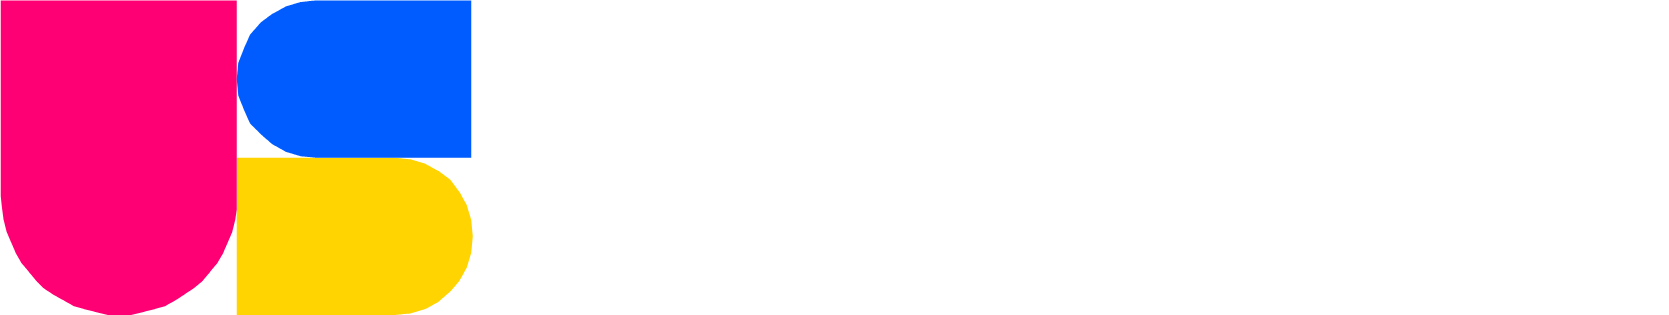 TaskUs Logo groß für dunkle Hintergründe (transparentes PNG)